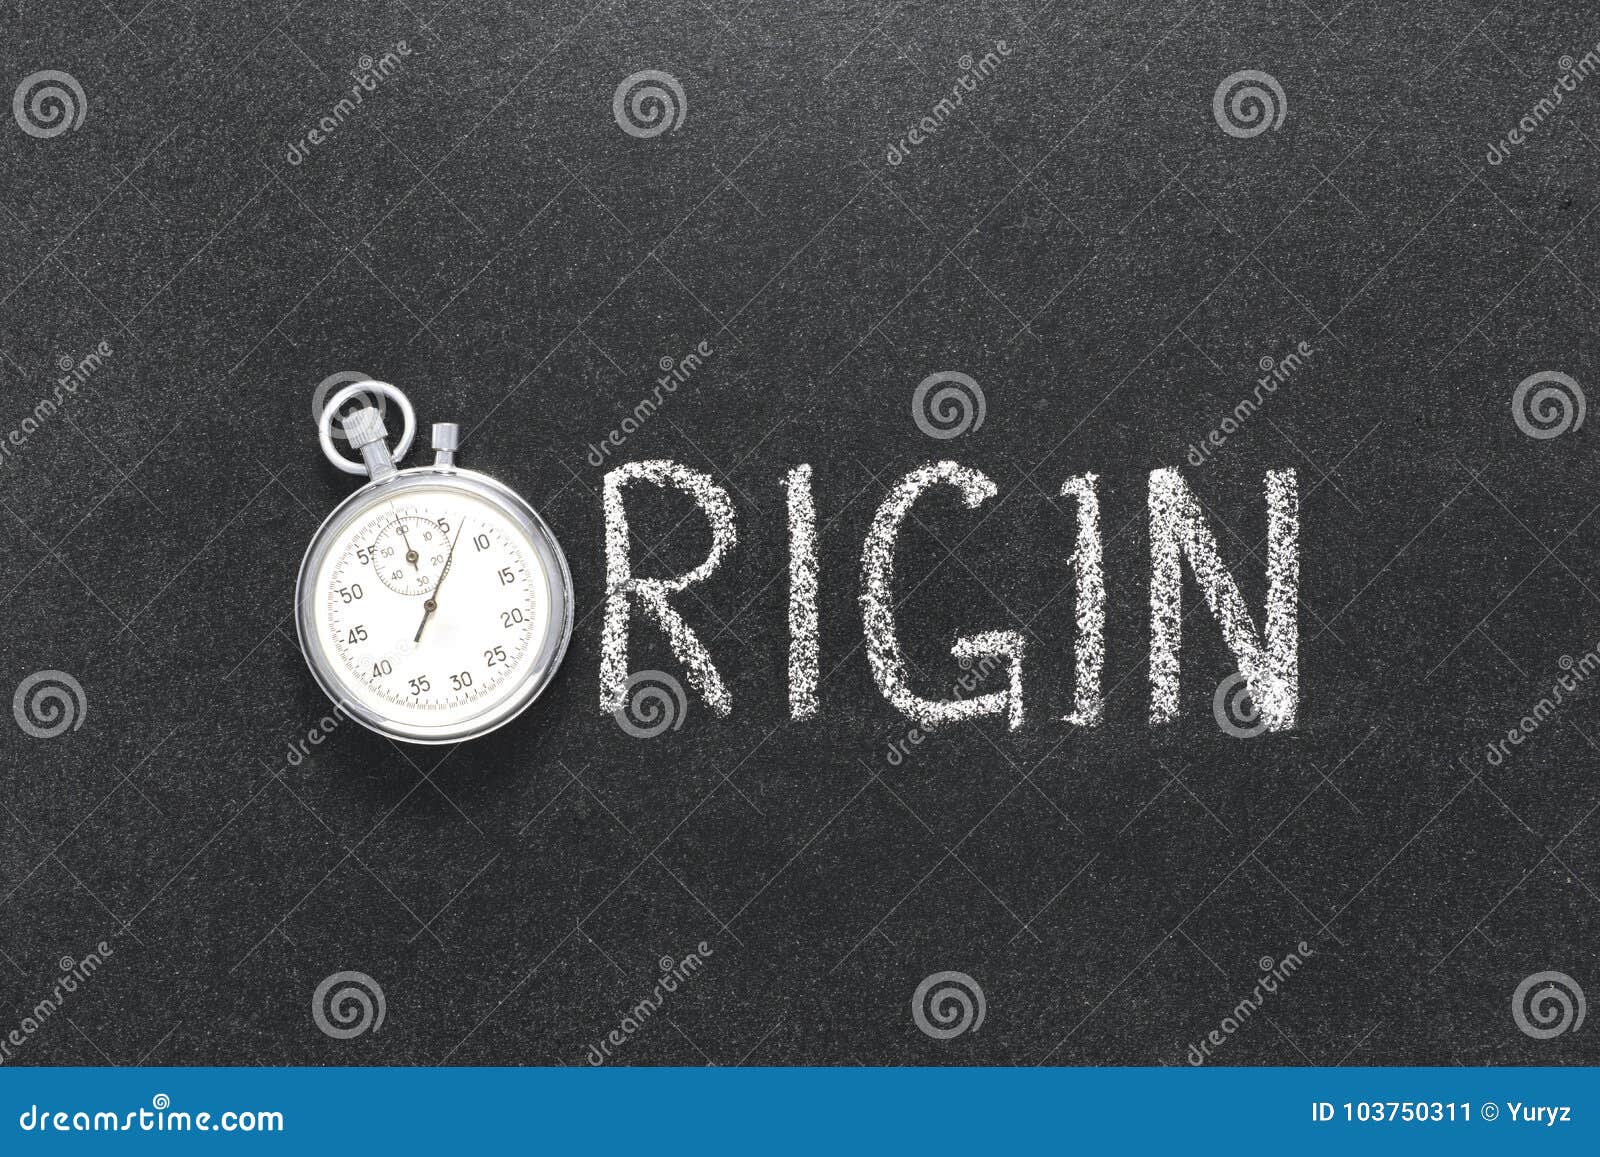 origin word watch